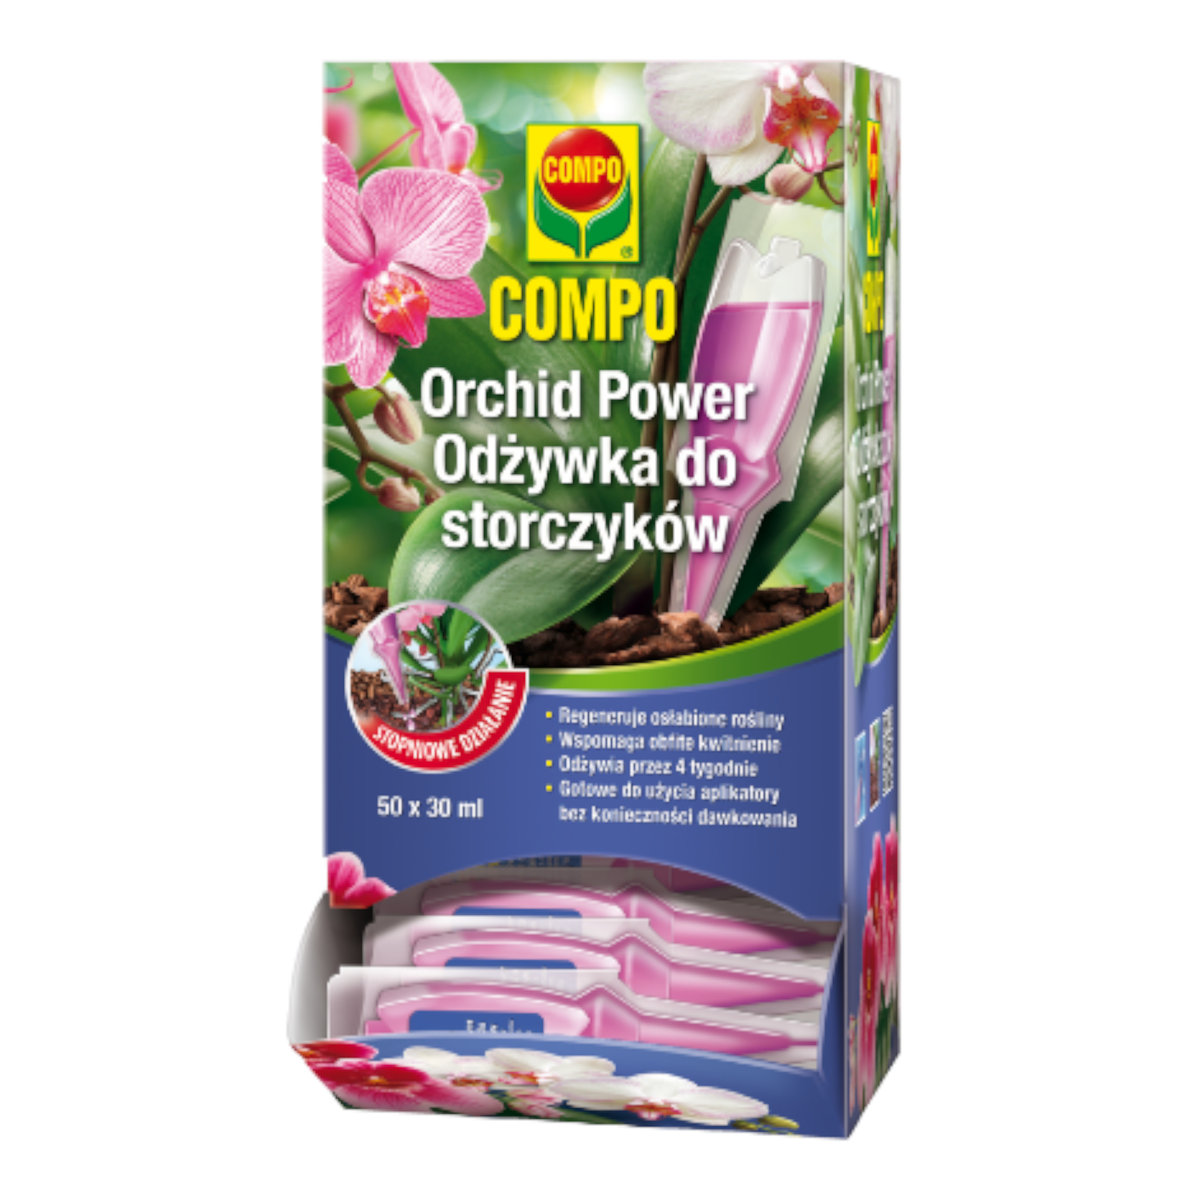 Compo Orchid Power odżywka do storczyków 1x30ml